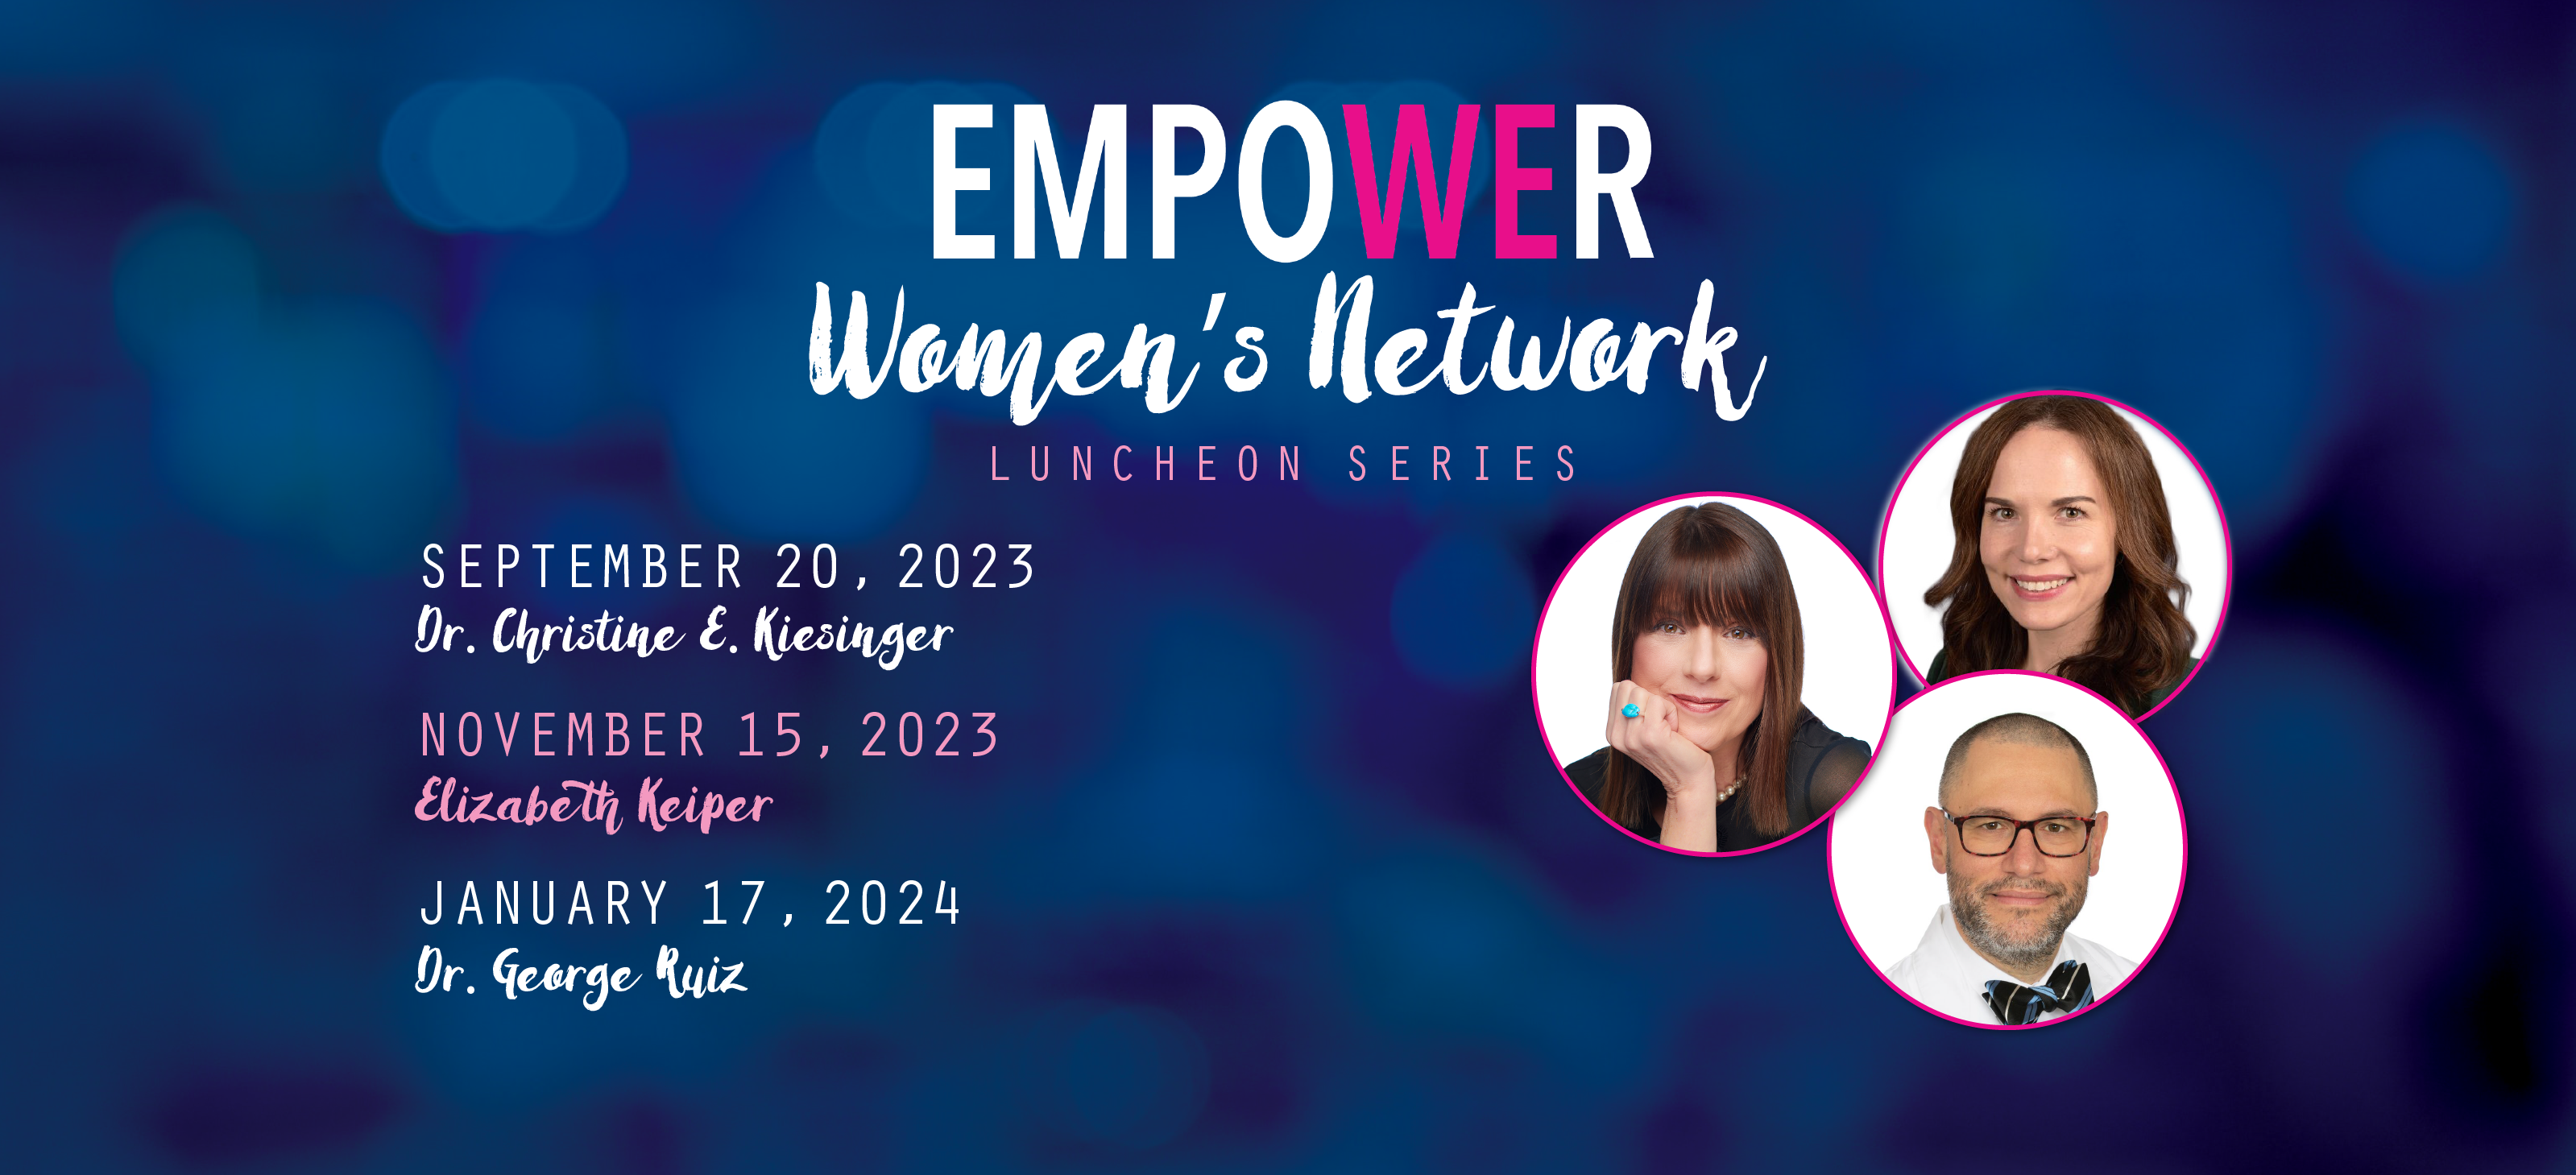 EMPOWER Women’s Network Luncheon